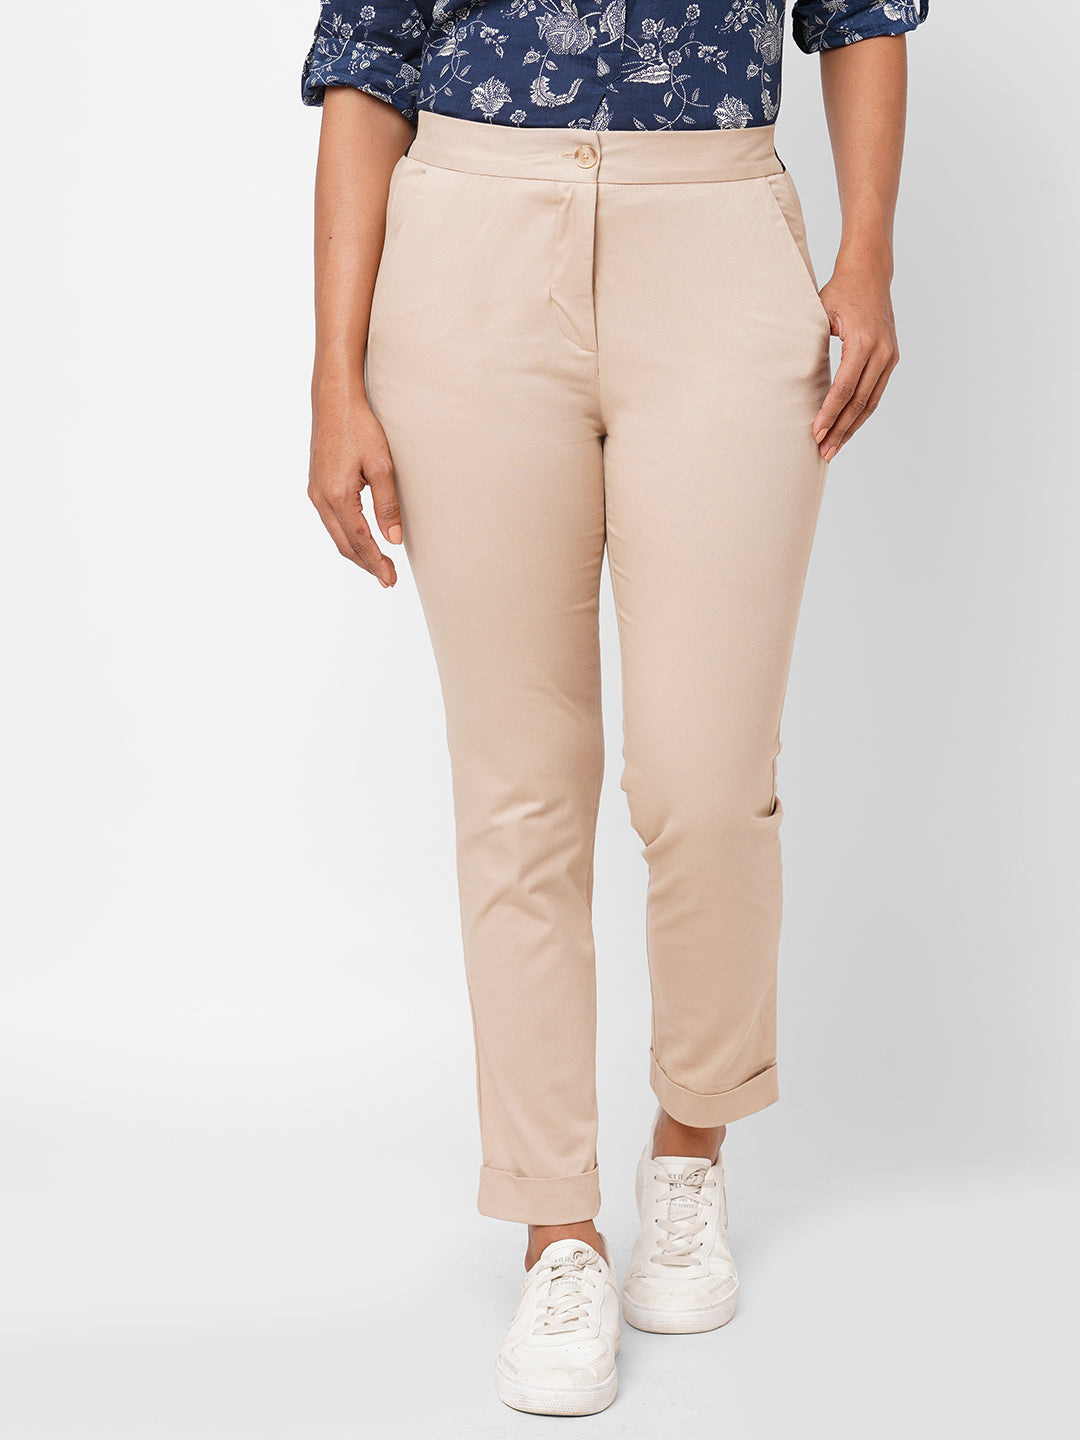 Buy Women's Cotton Lycra Semi-Formal Wear Slim Fit Pants